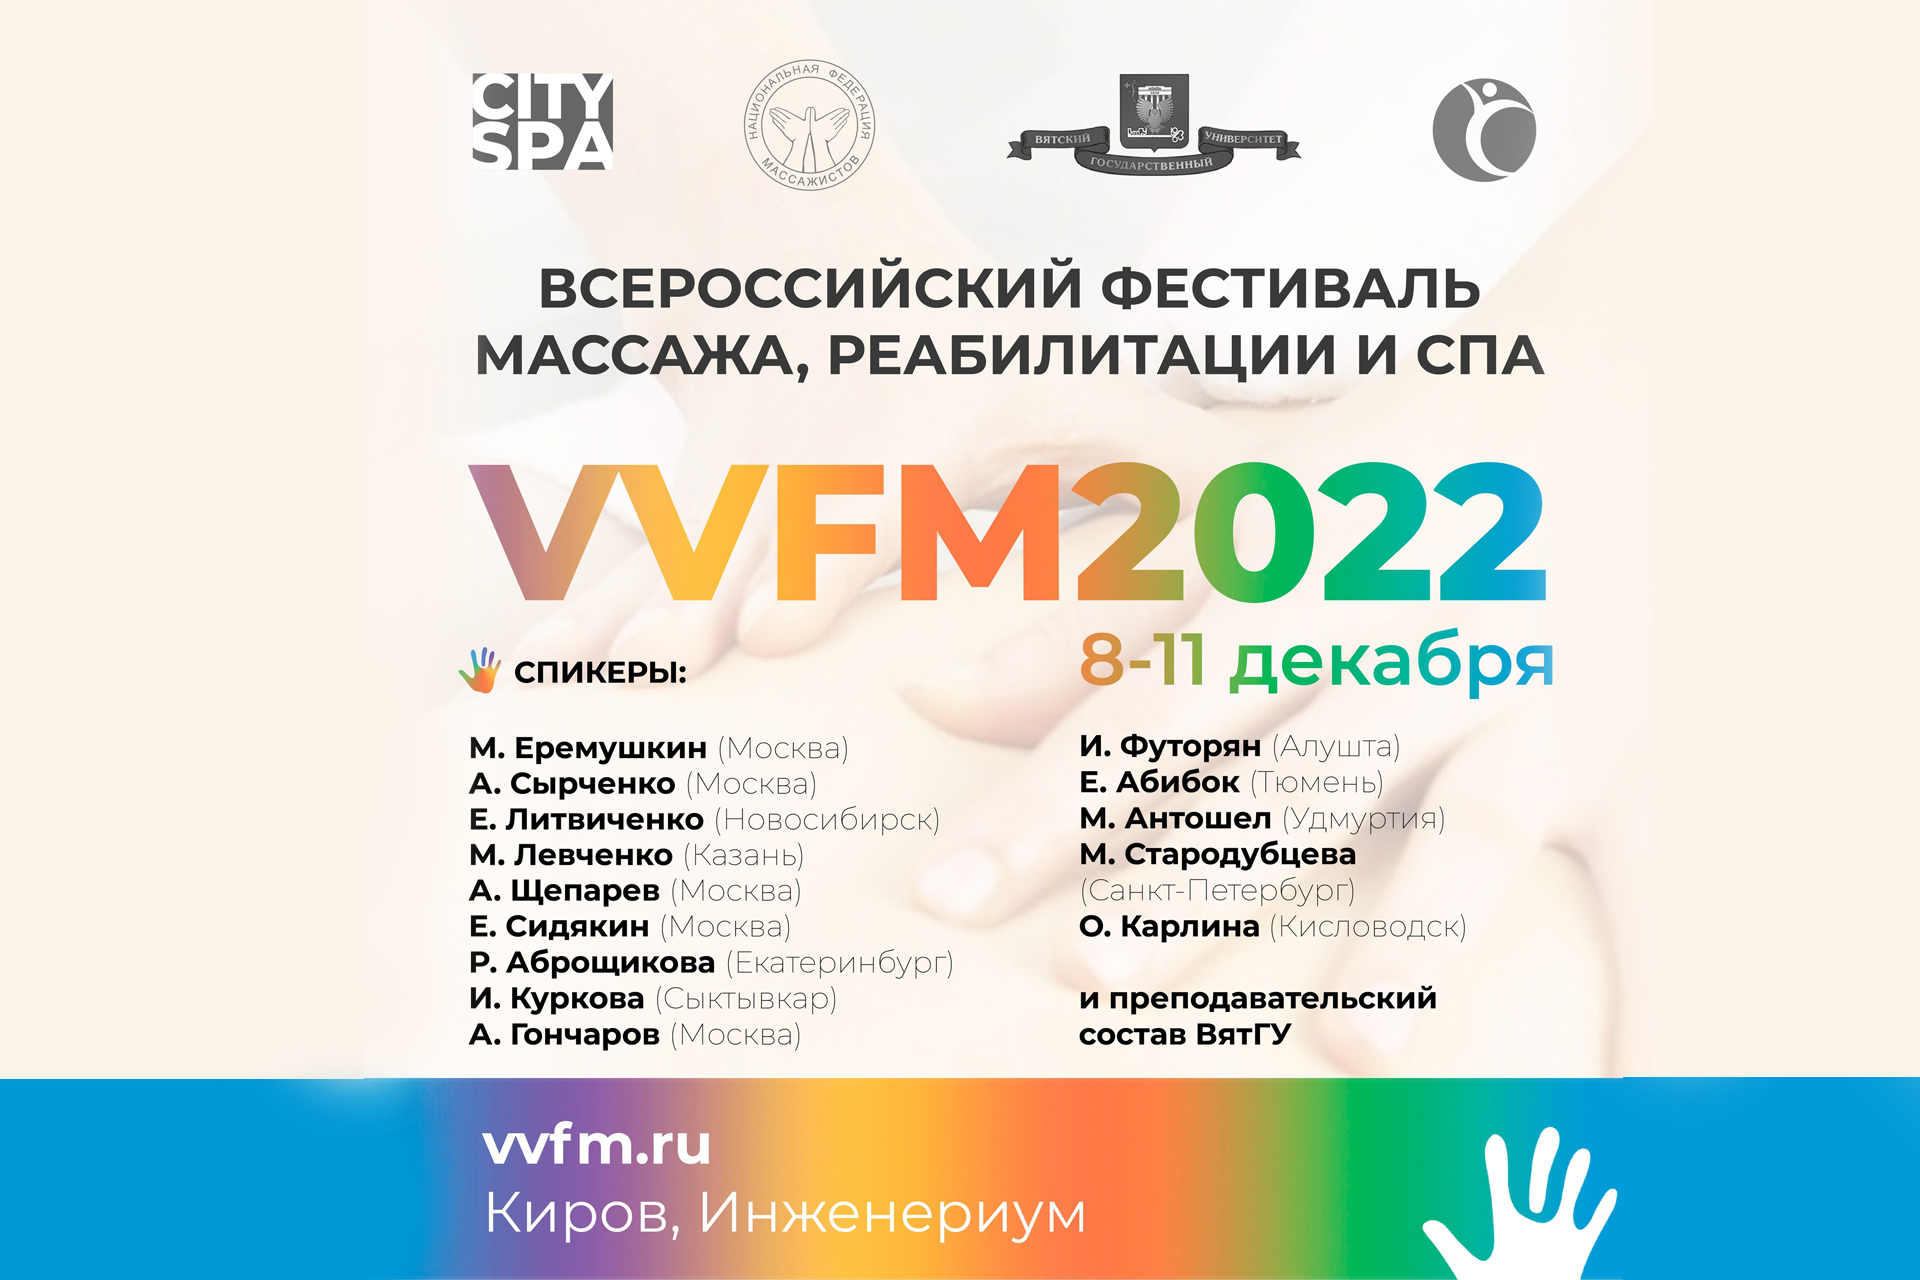 Всероссийский Фестиваль массажа, реабилитации и спа VVFM2022